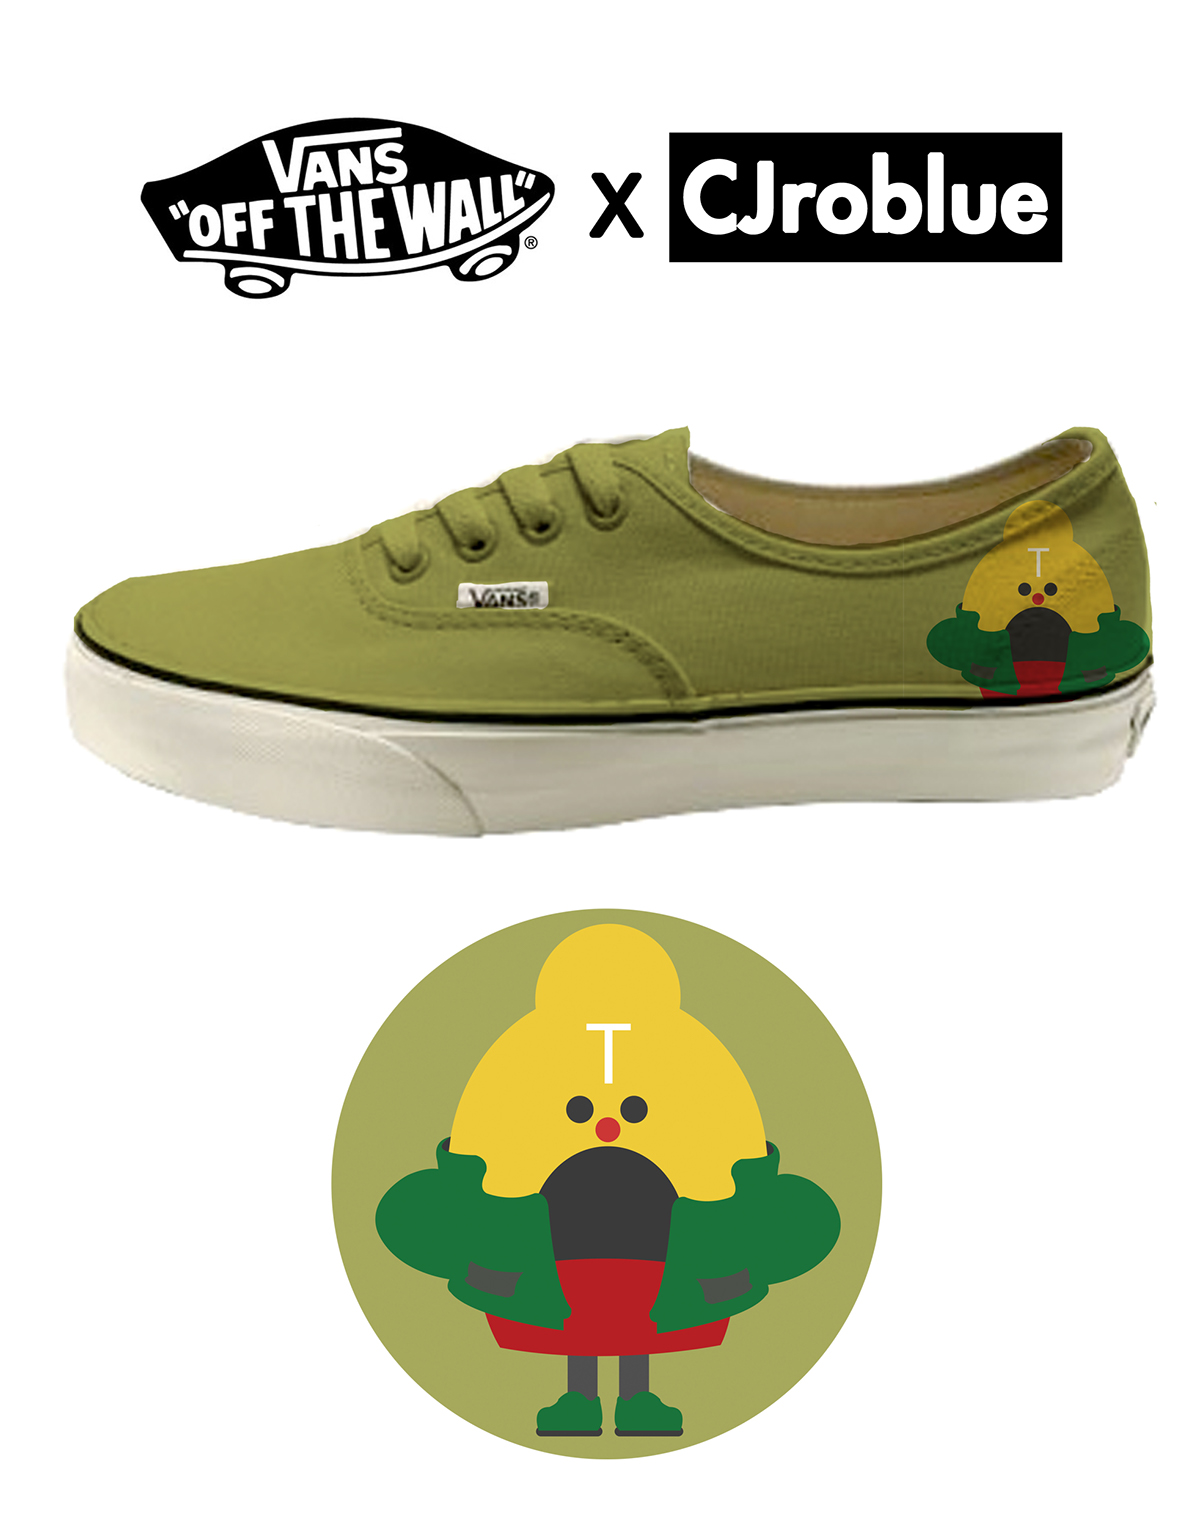 Vans shoes CJroblue Collaboration illust